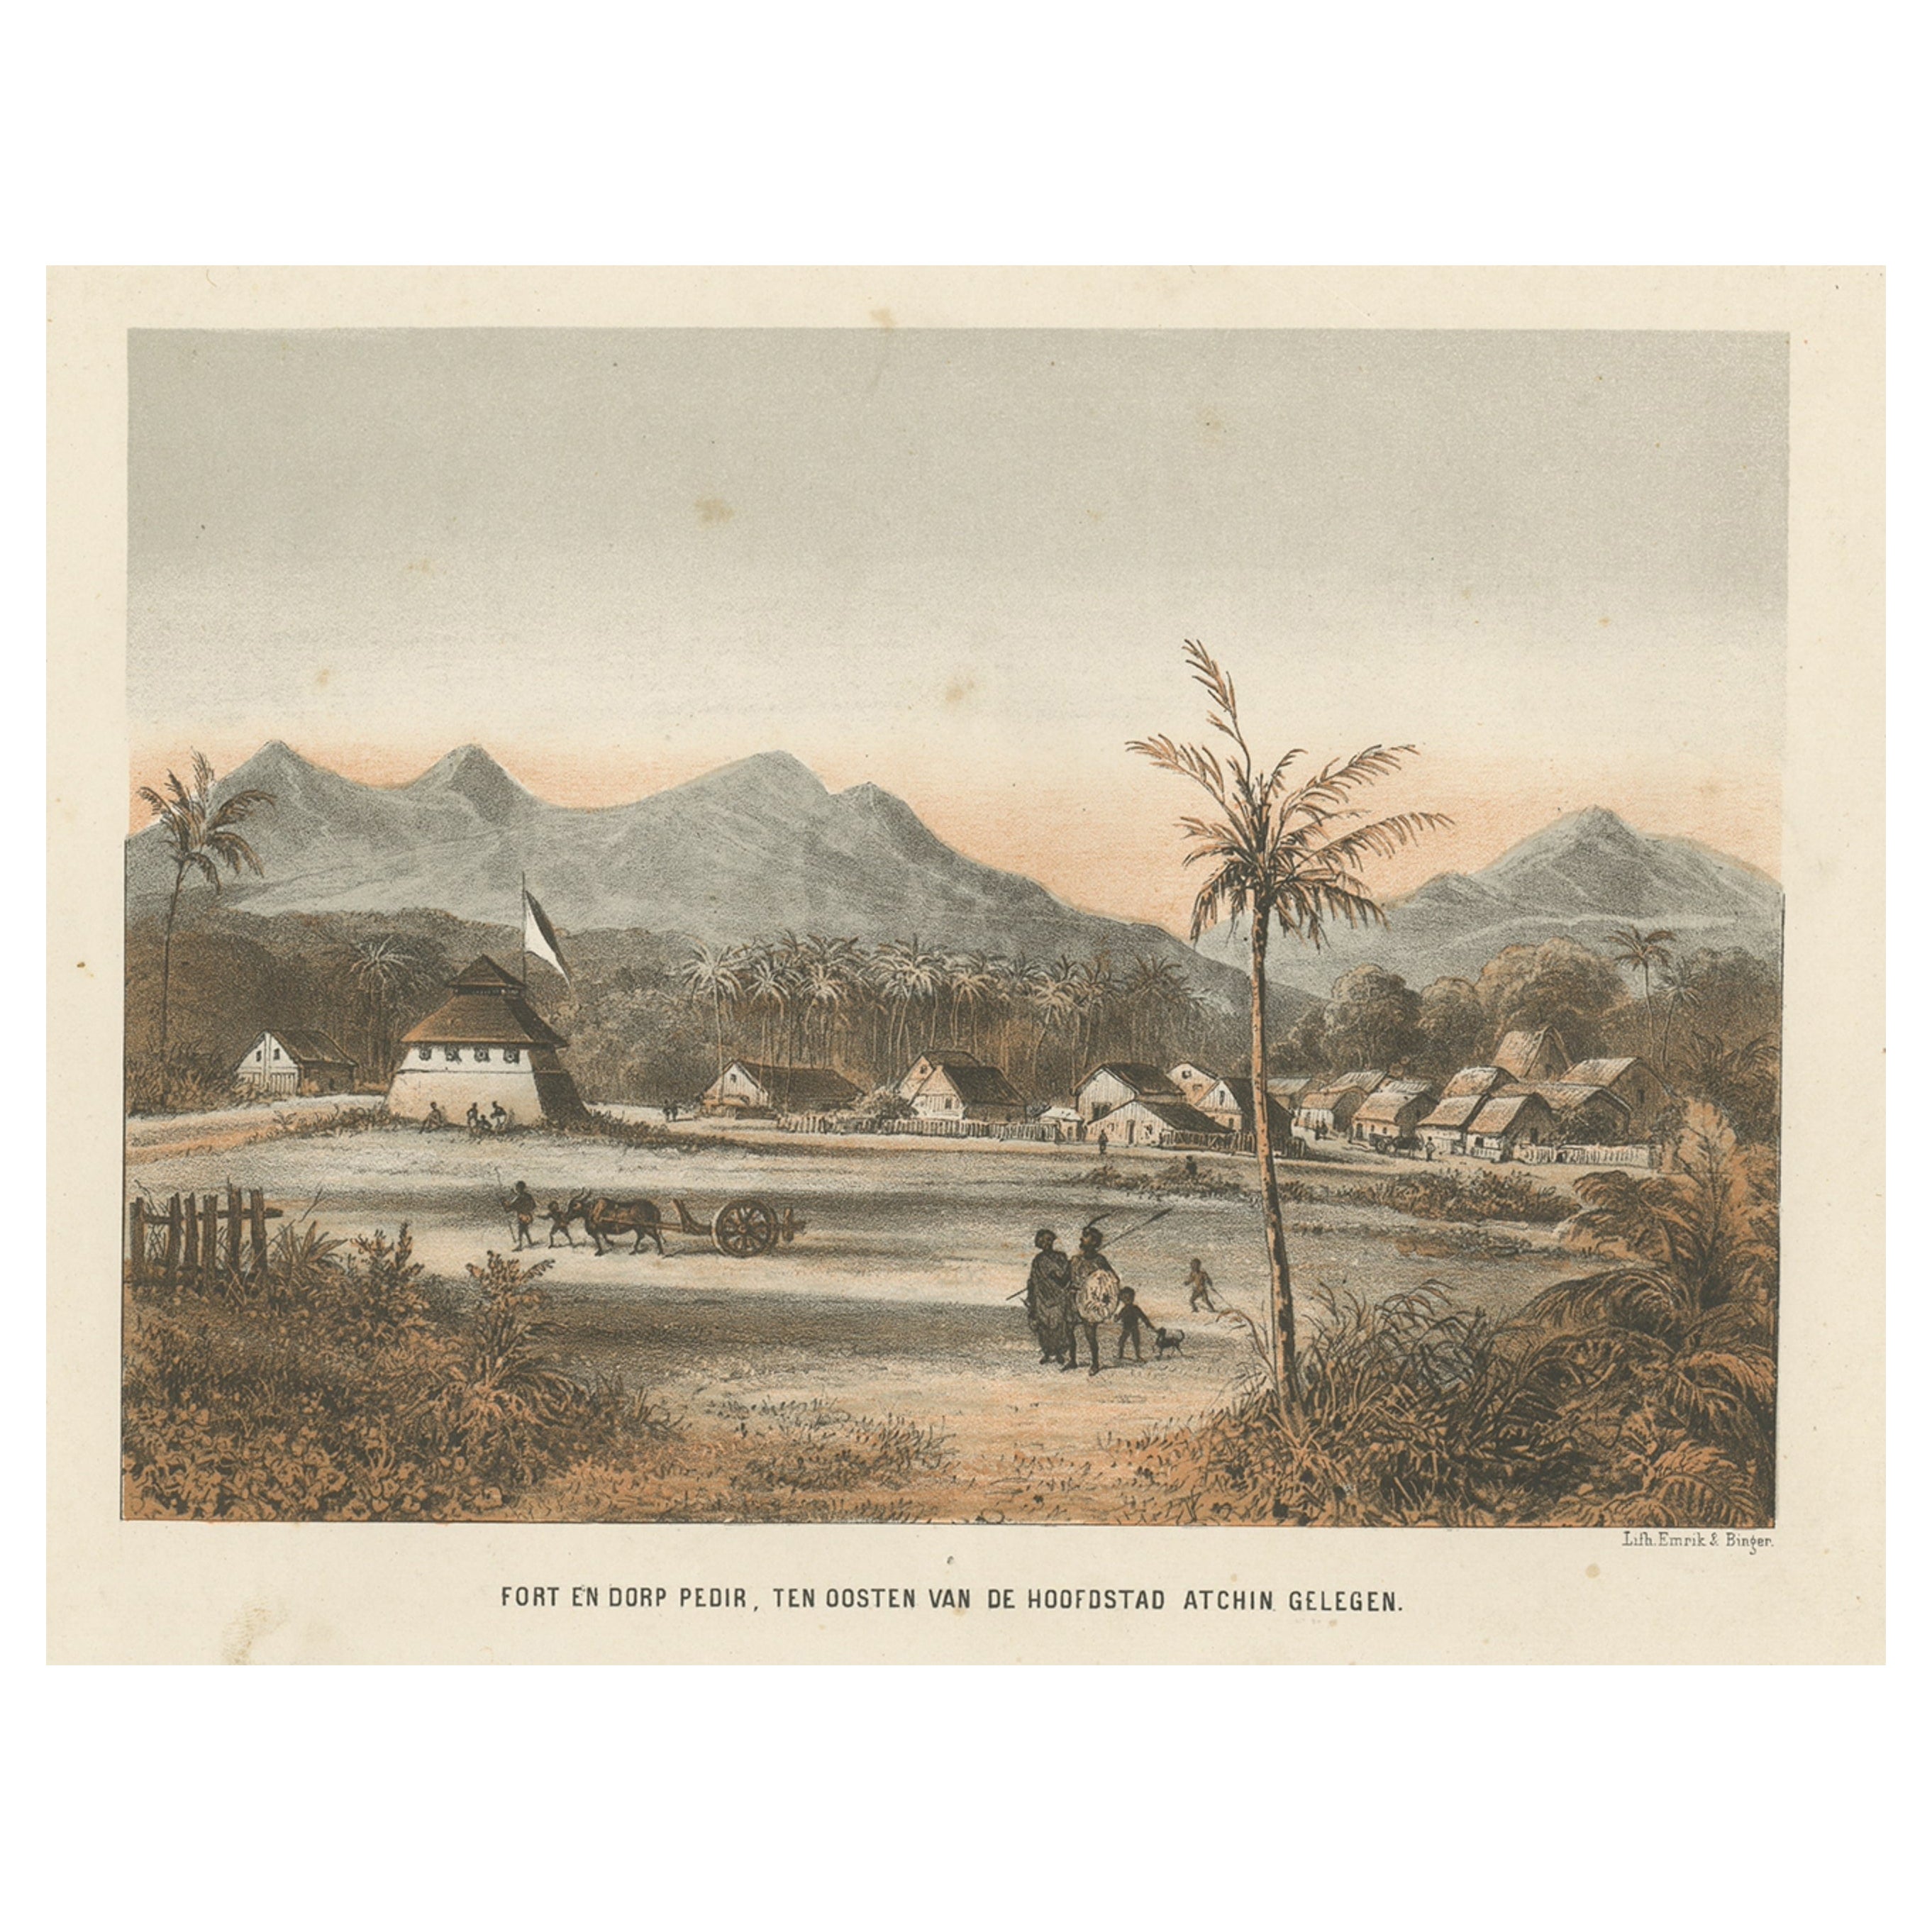 Belle vue ancienne de village asiatique à Aceh, Sumatra, Indonésie, 1874